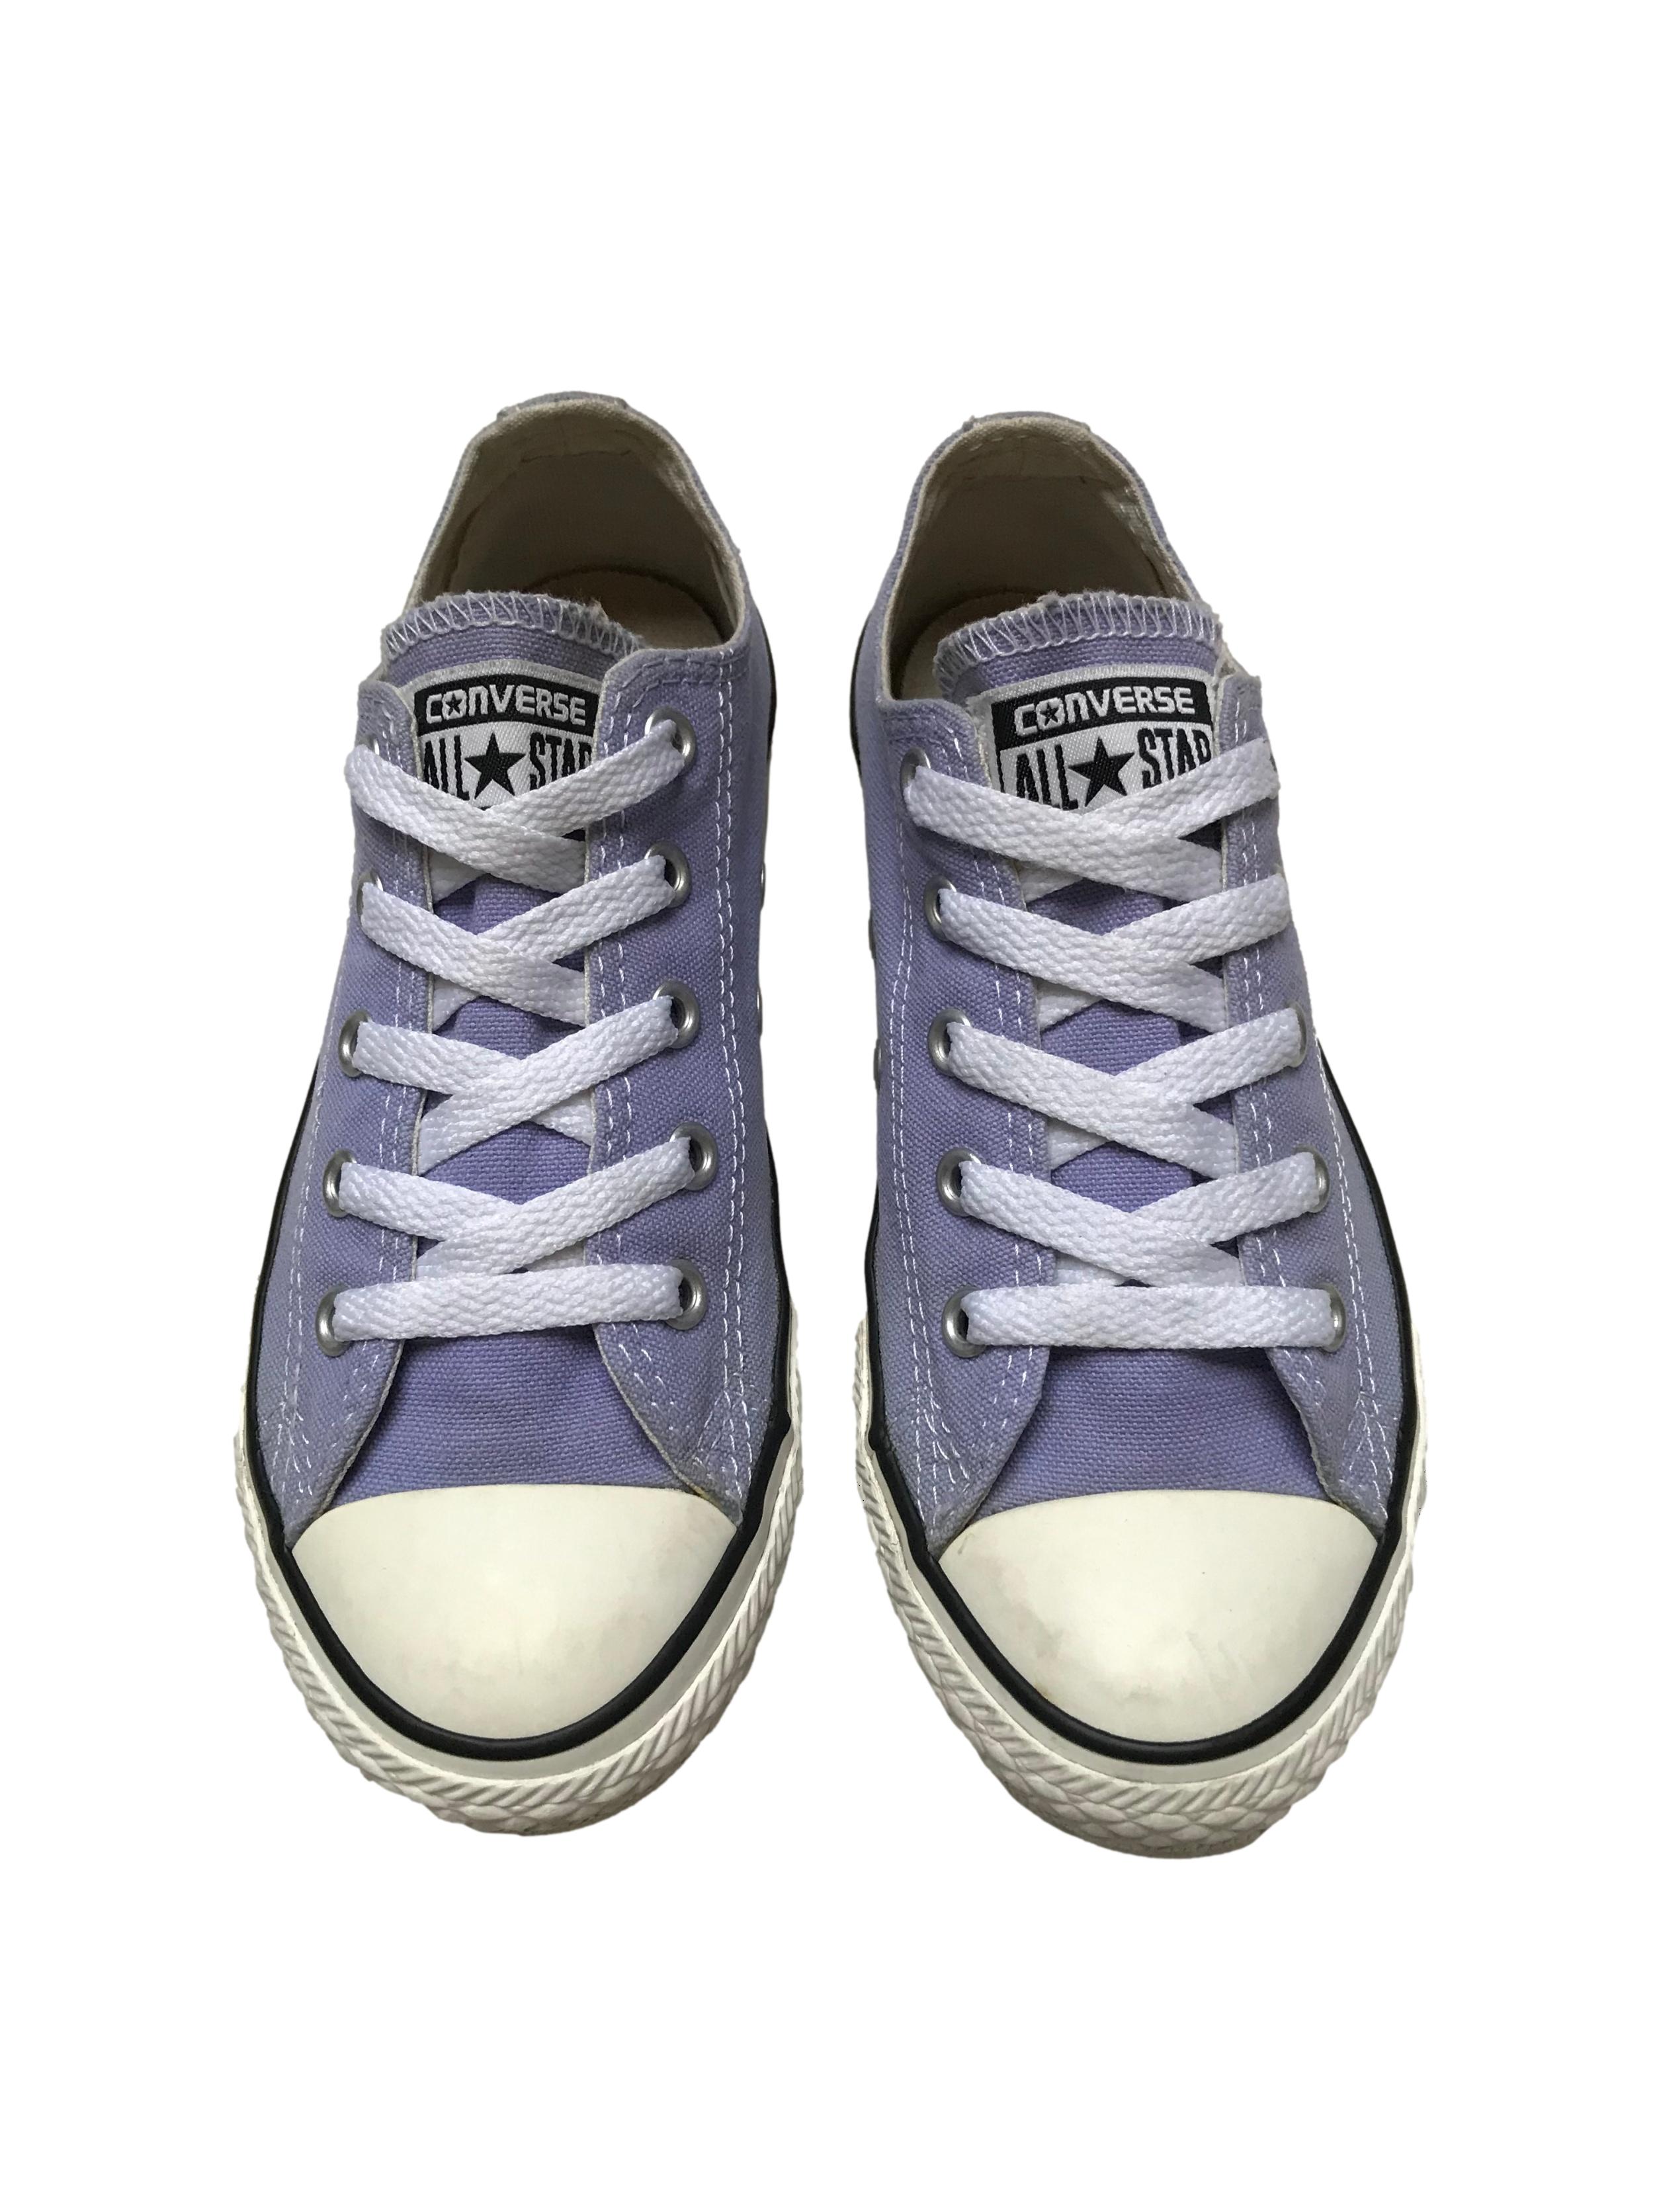 Zapatillas Converse lilas con pasadores blancos. Estado 8.5/10. Precio original S/ 189 